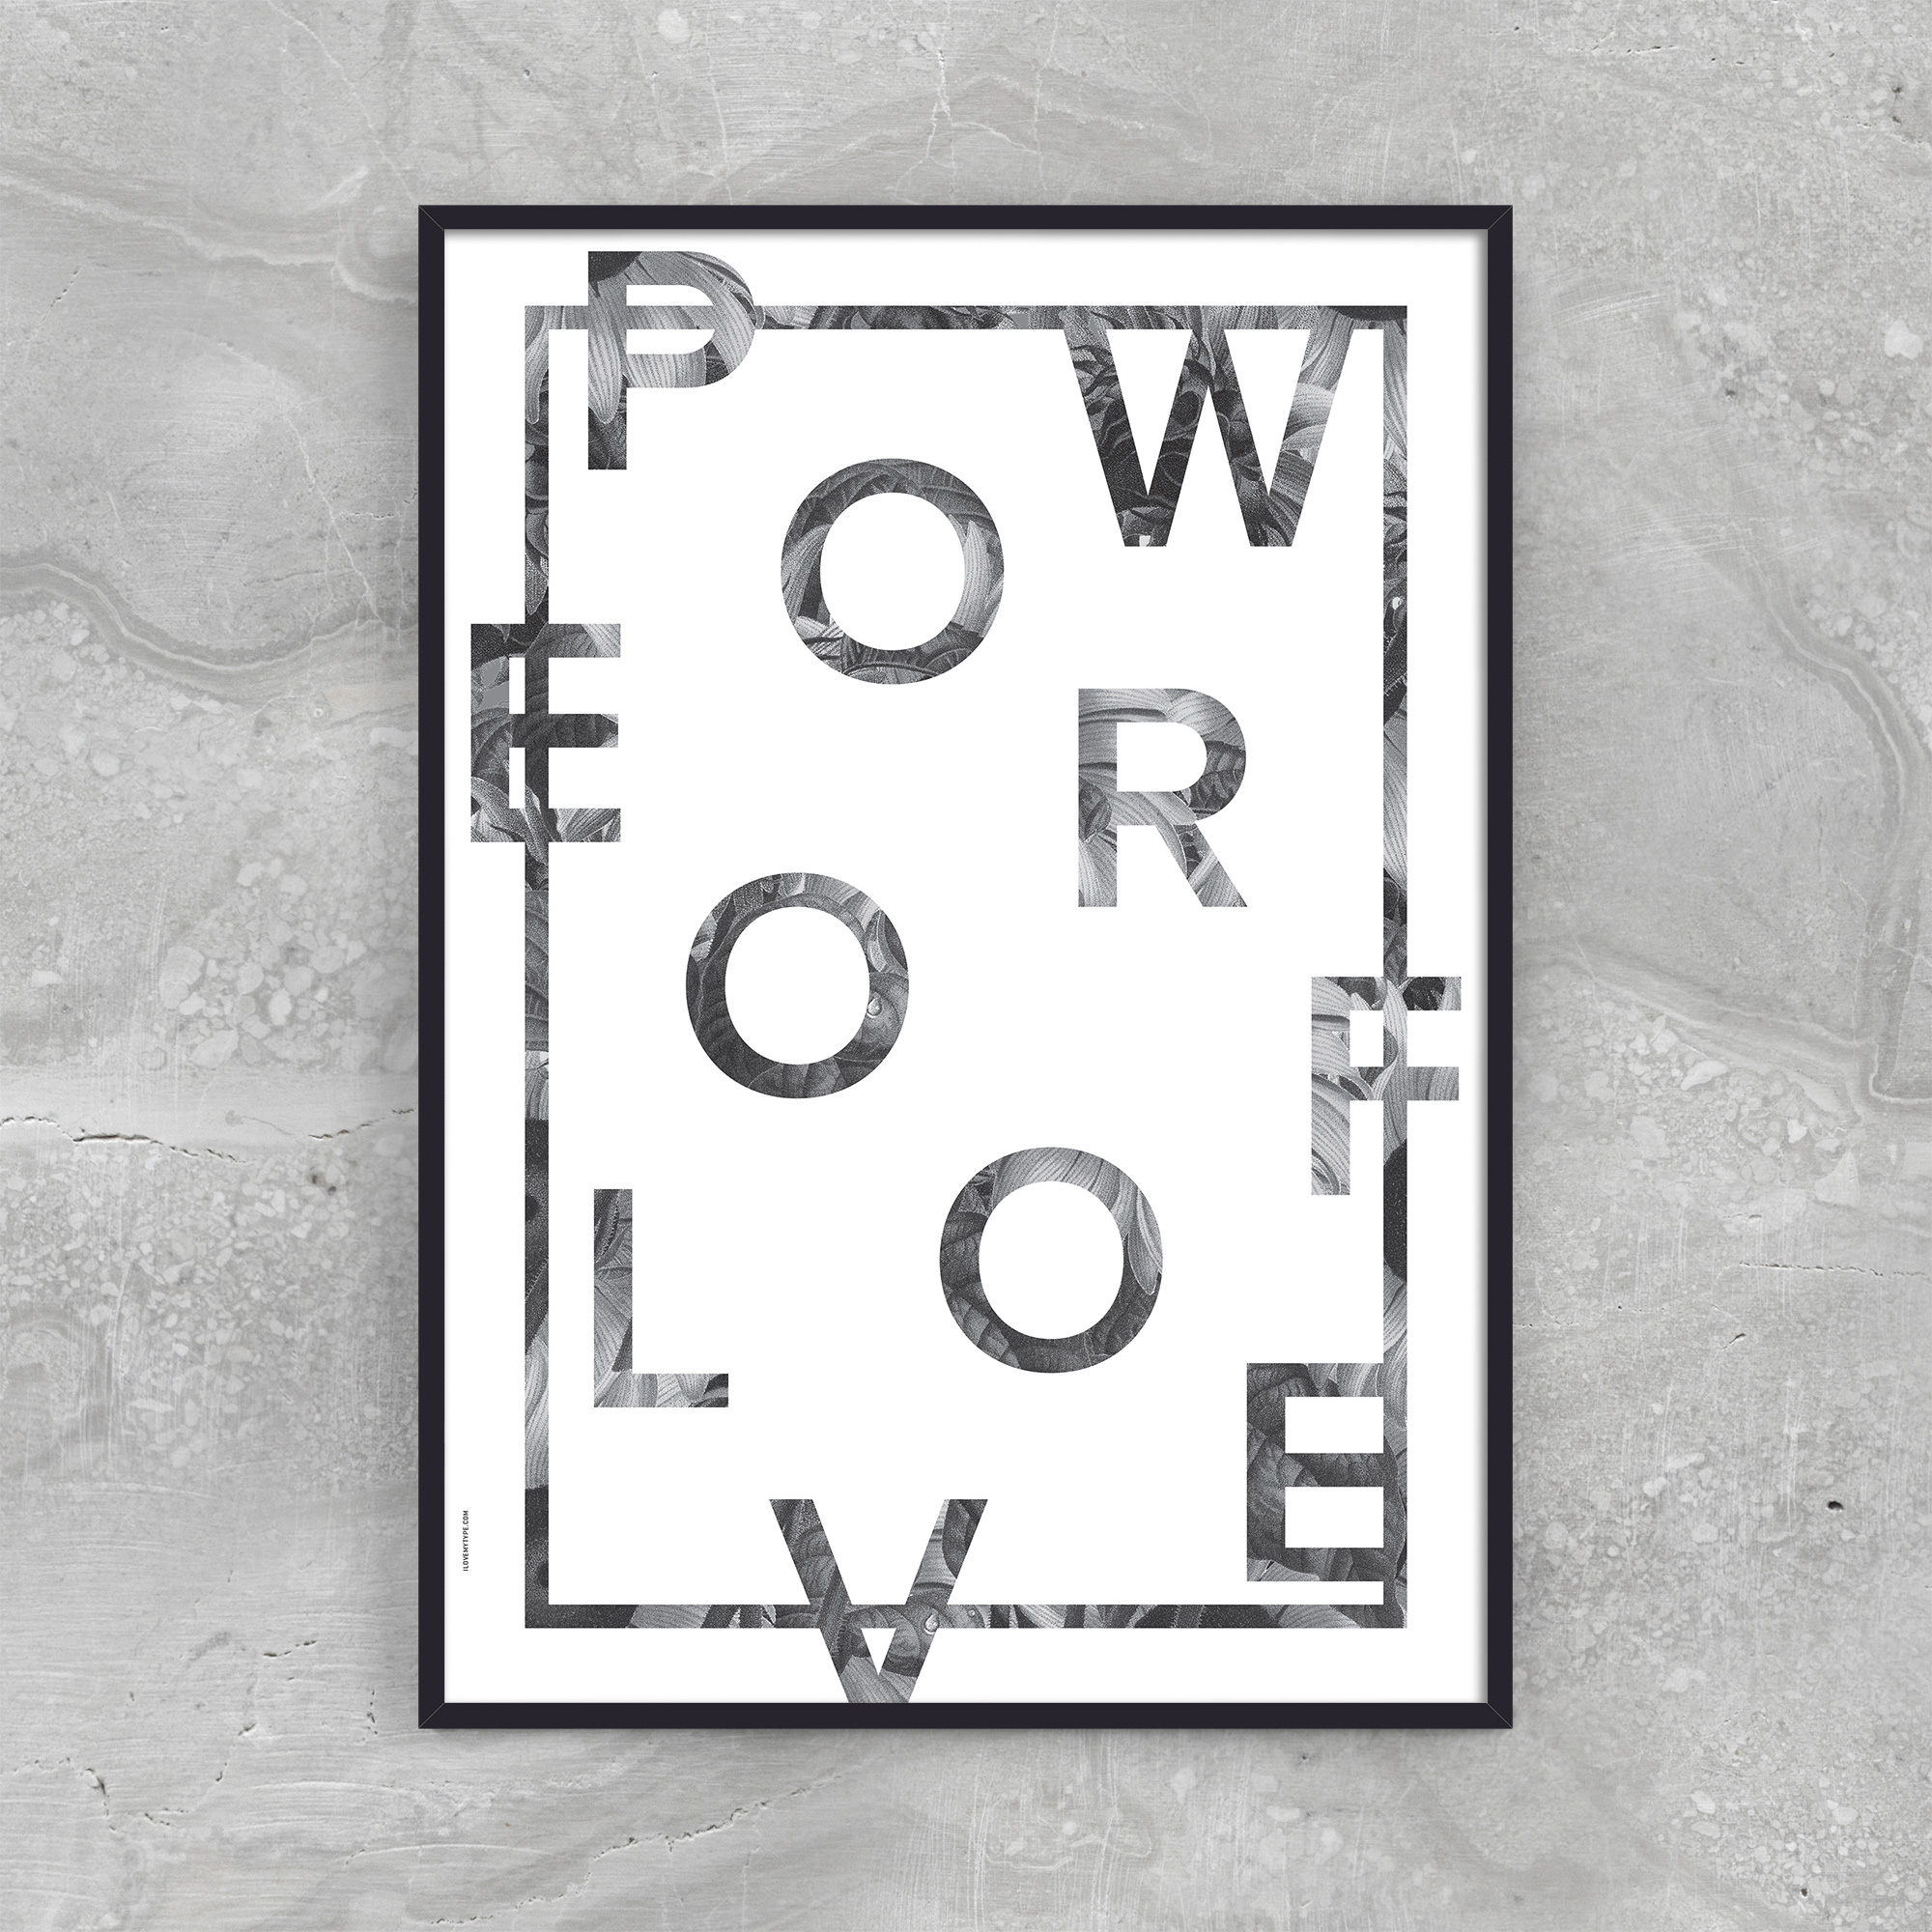 Se POWER OF LOVE - WHITE hos Picment.dk